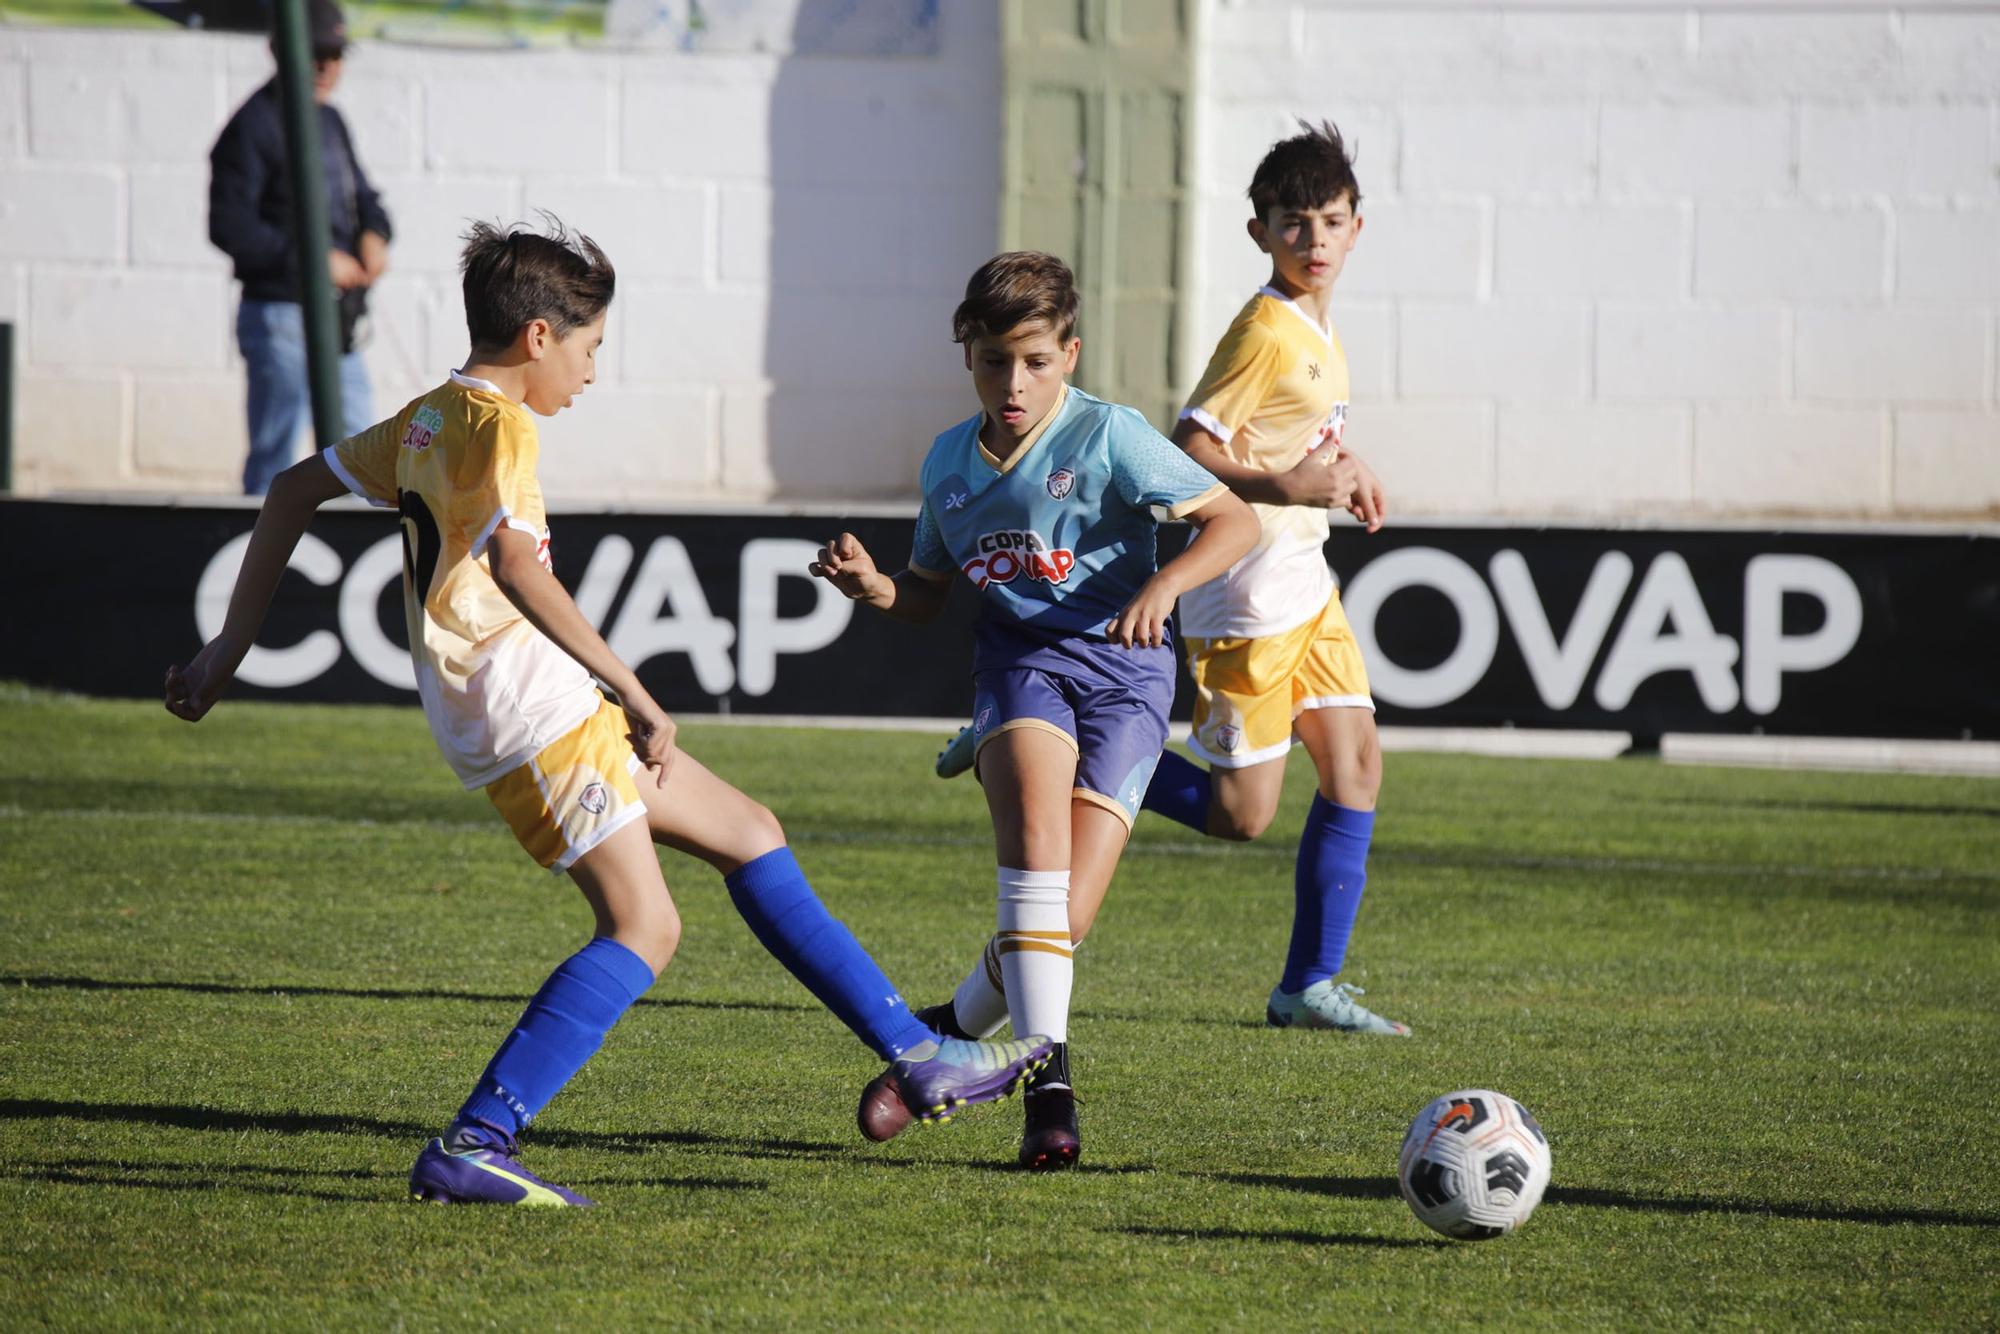 La Copa Covap en Pozoblanco en imágenes